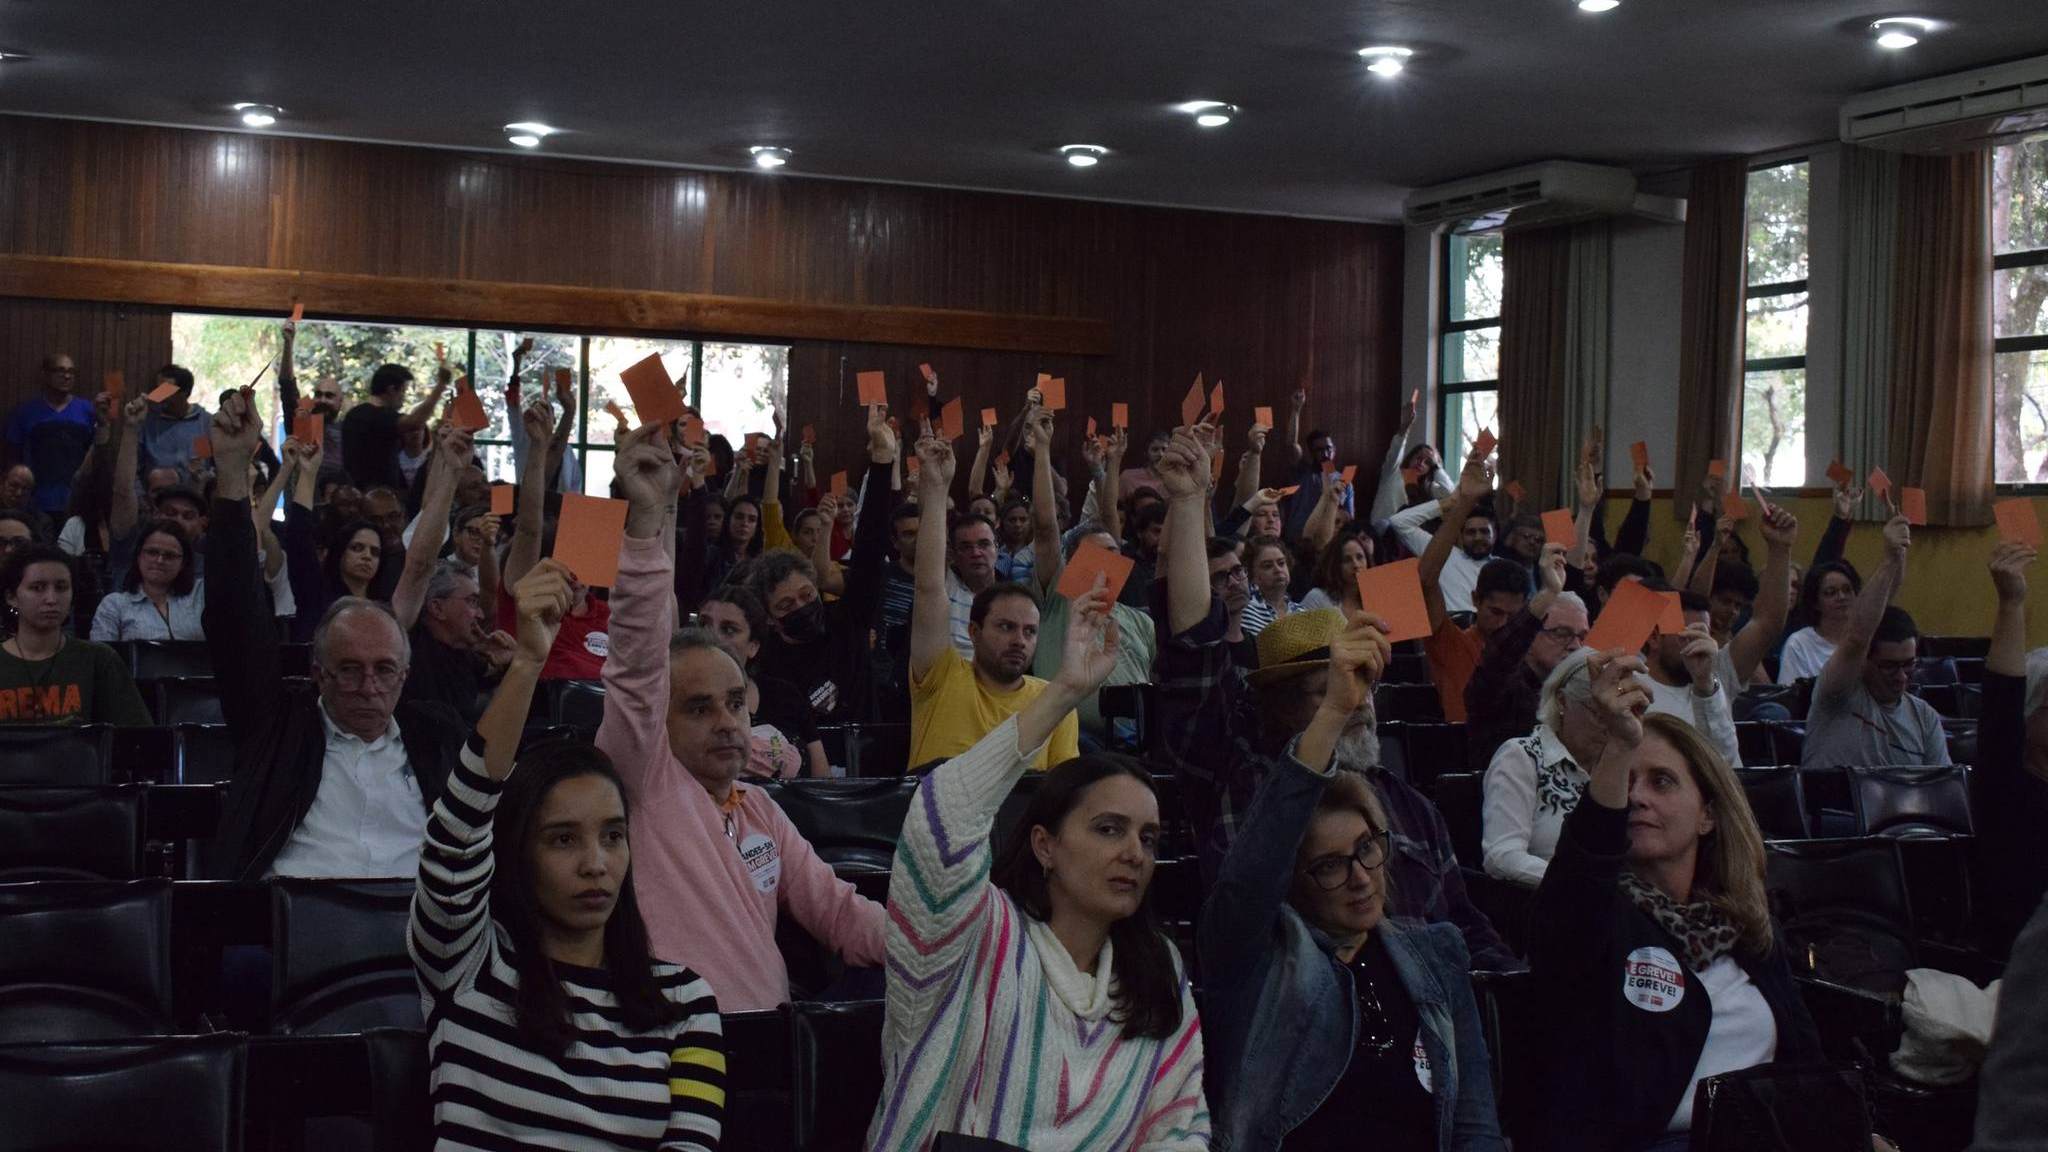 Assembleia docente decide pela permanência em greve e rejeição ao acordo com o governo